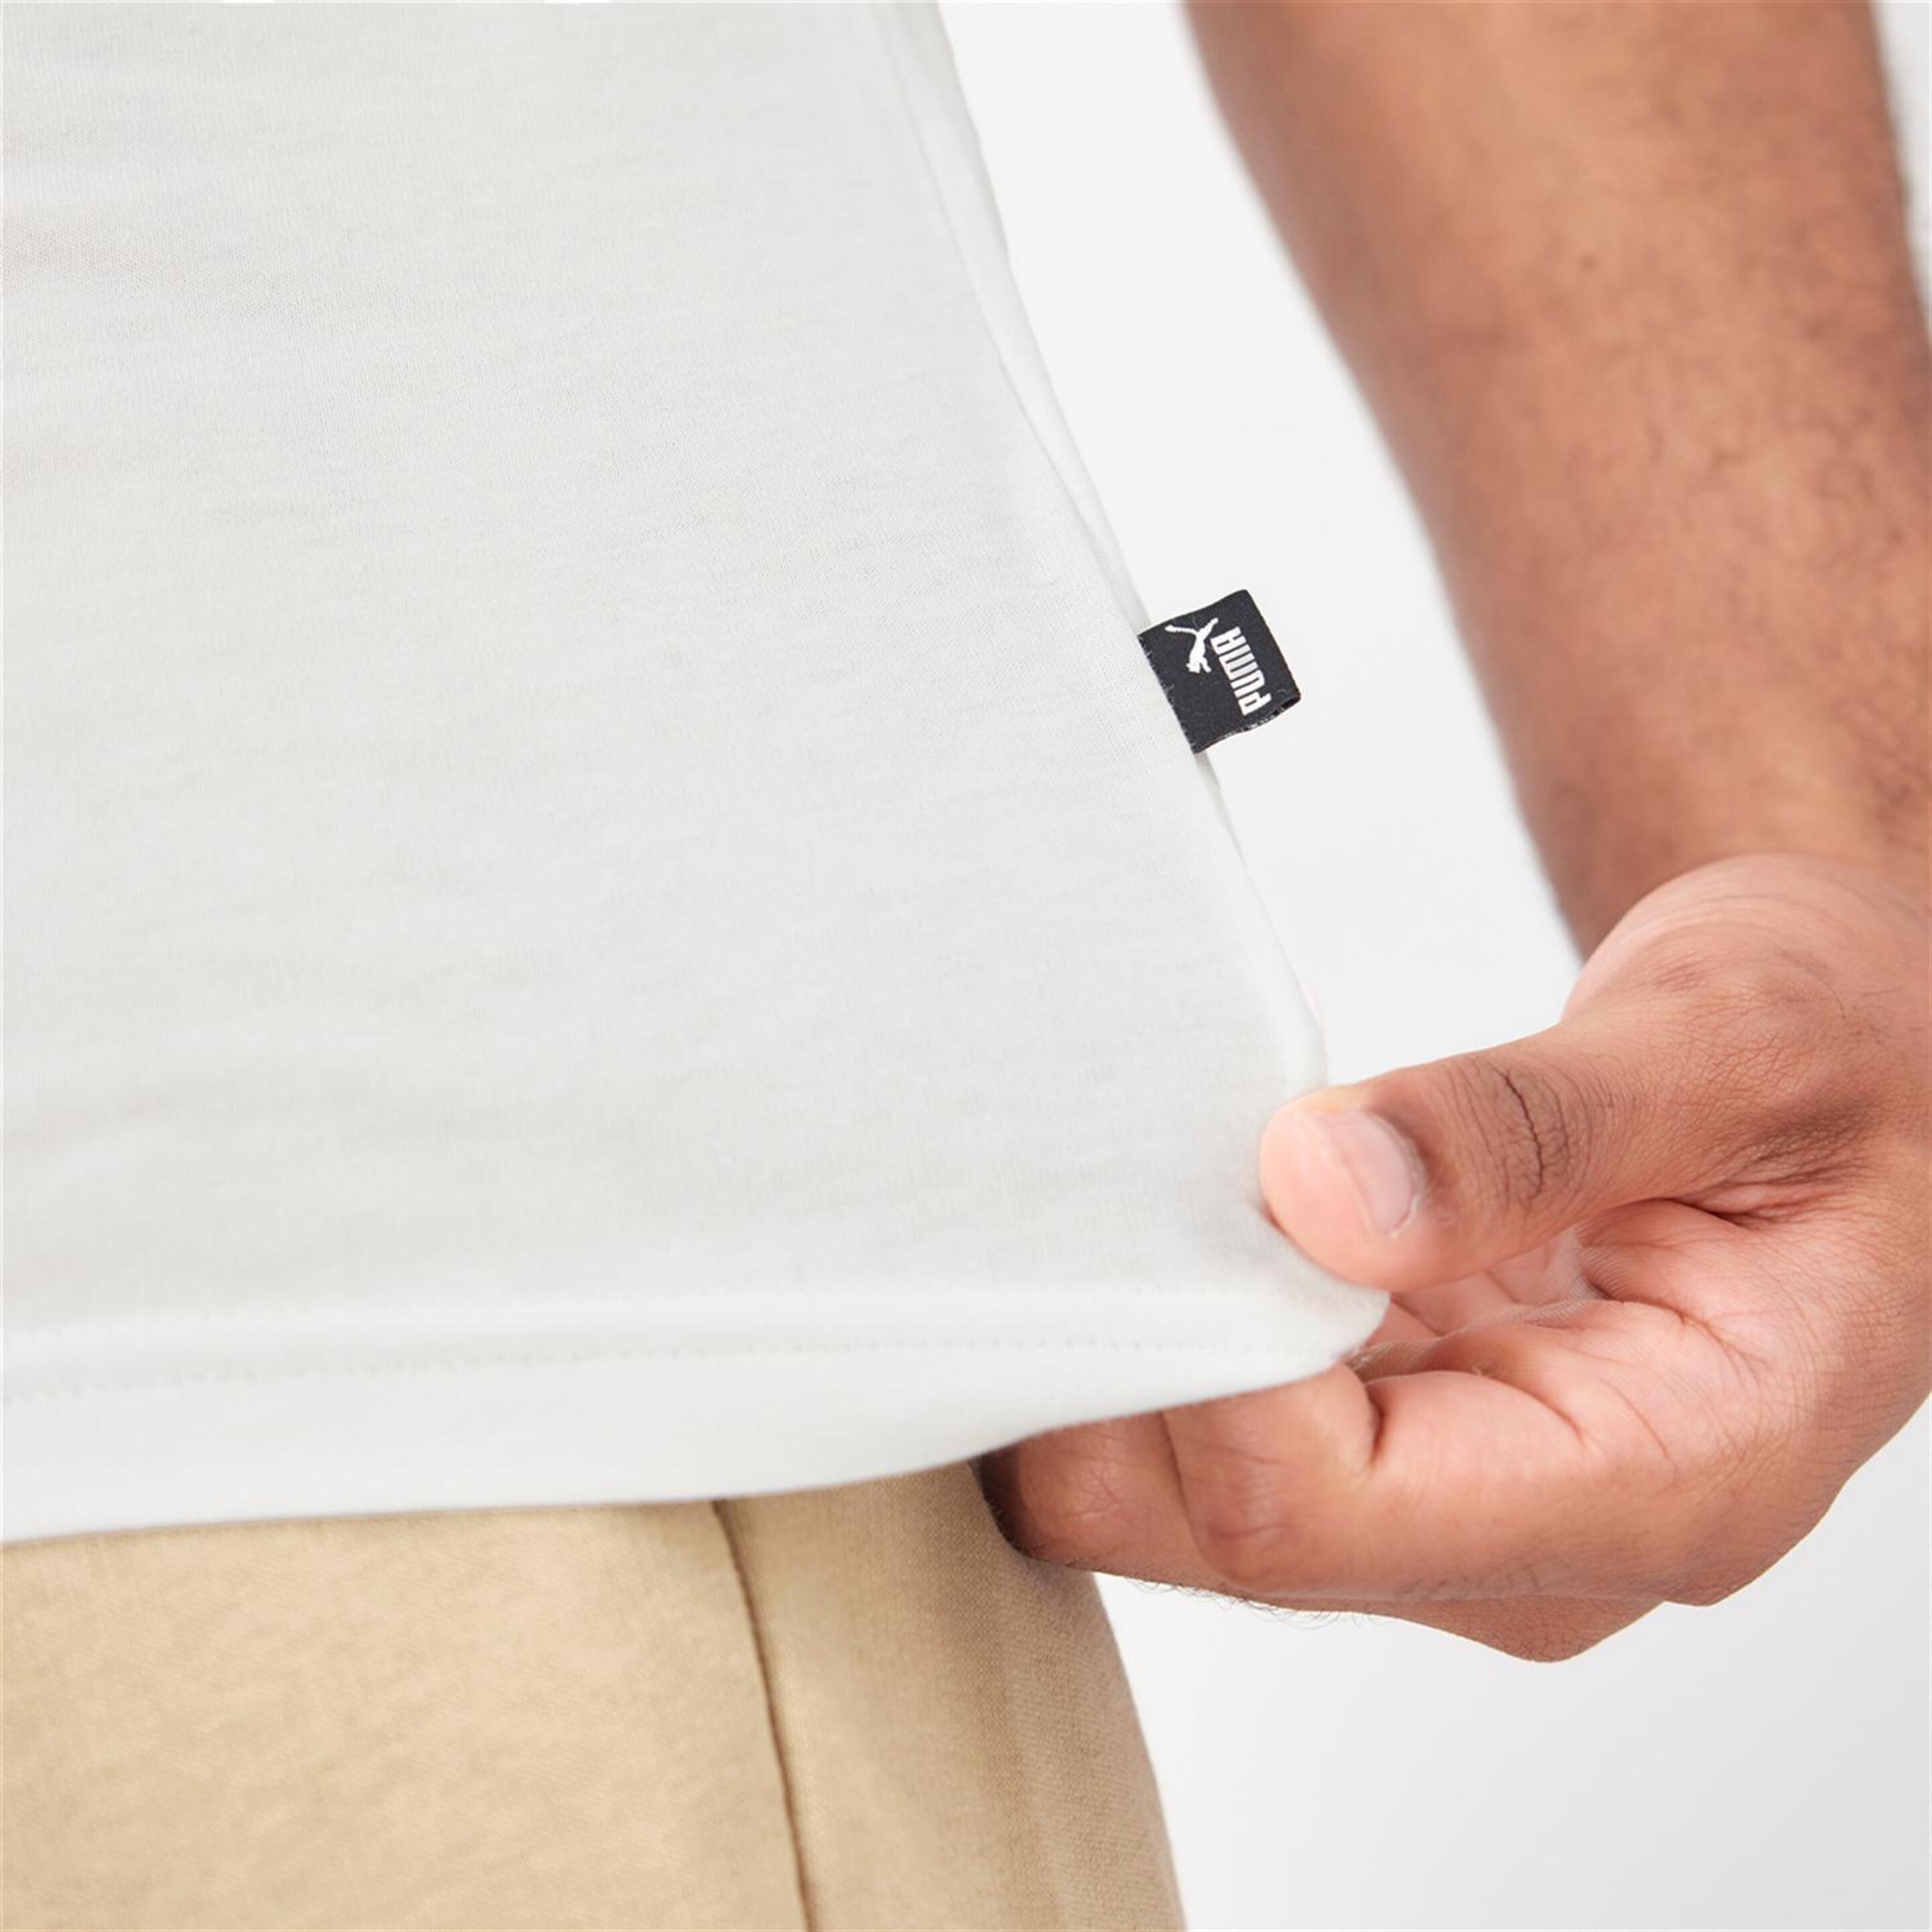 Puma Essential Graphic - Blanco - Camiseta Hombre